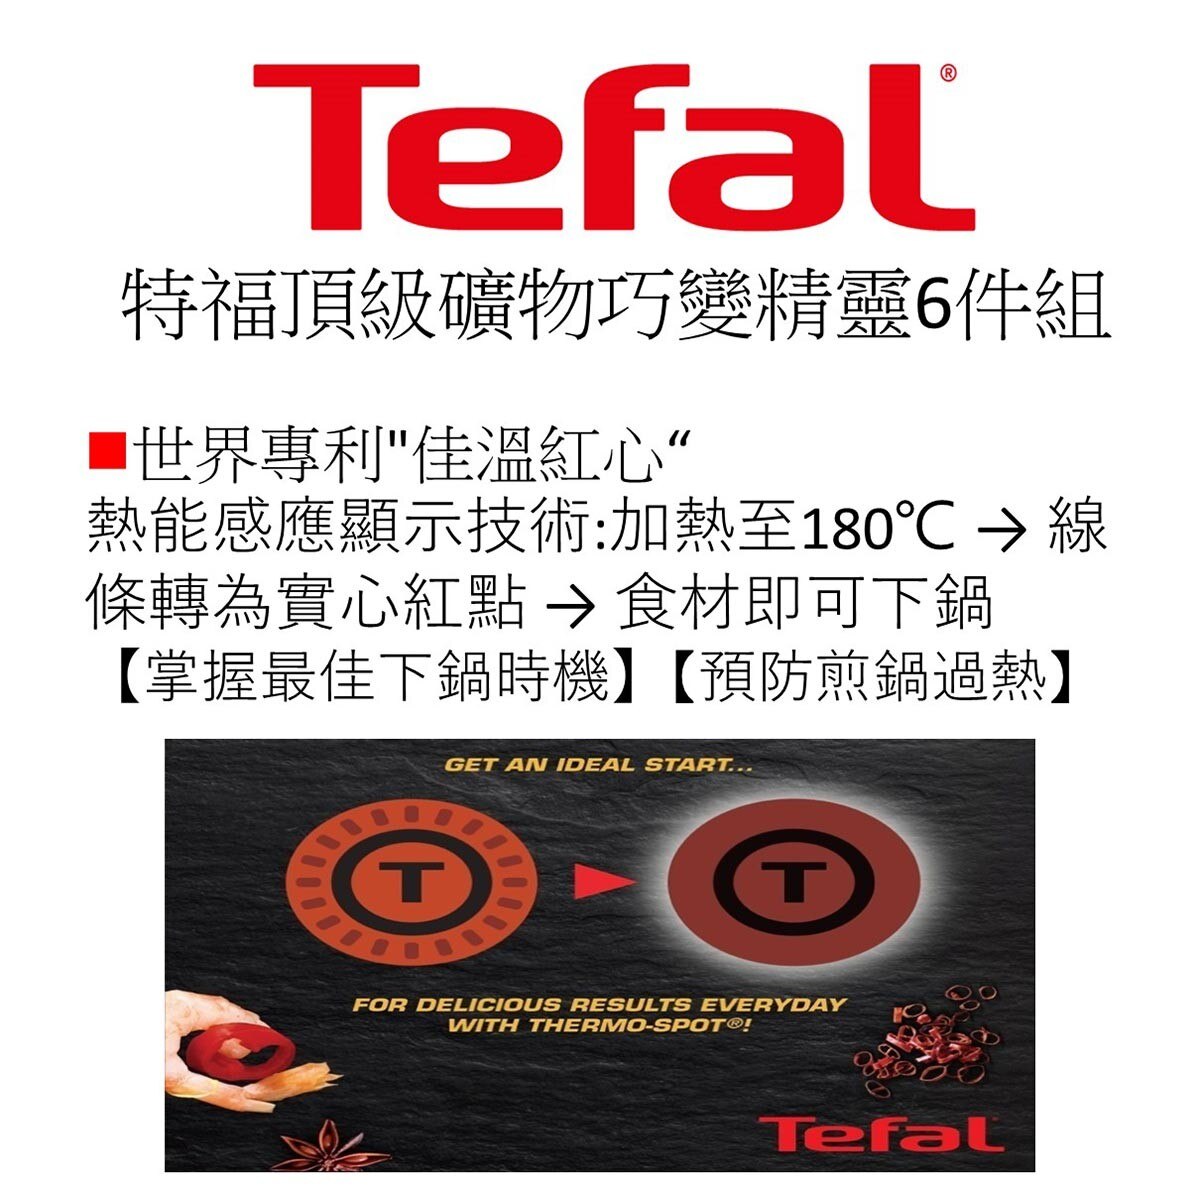 Tefal 頂級礦物巧變精靈系列 鍋具6件組，可拆把手，換鍋自由，上菜、收納皆方便。